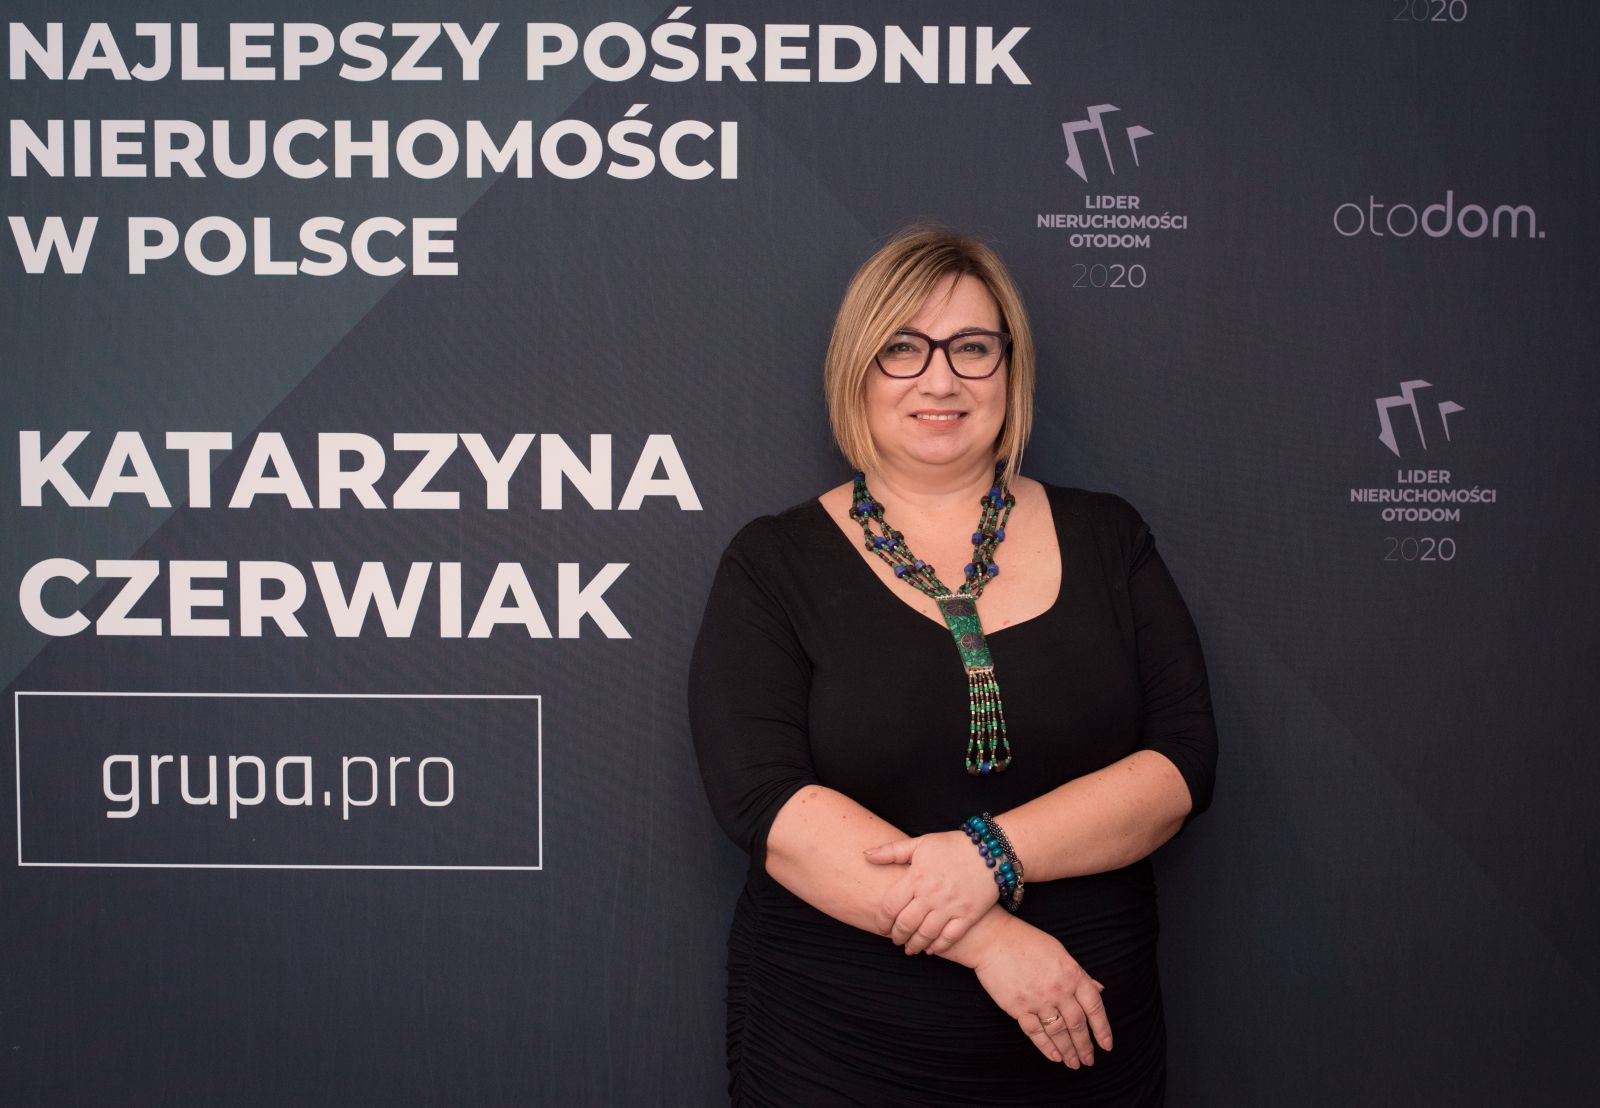 Katarzyna Czerwiak - Najlepszy Pośrednik w Polsce w 2020 wg Liderów Nieruchomości Otodom.pl